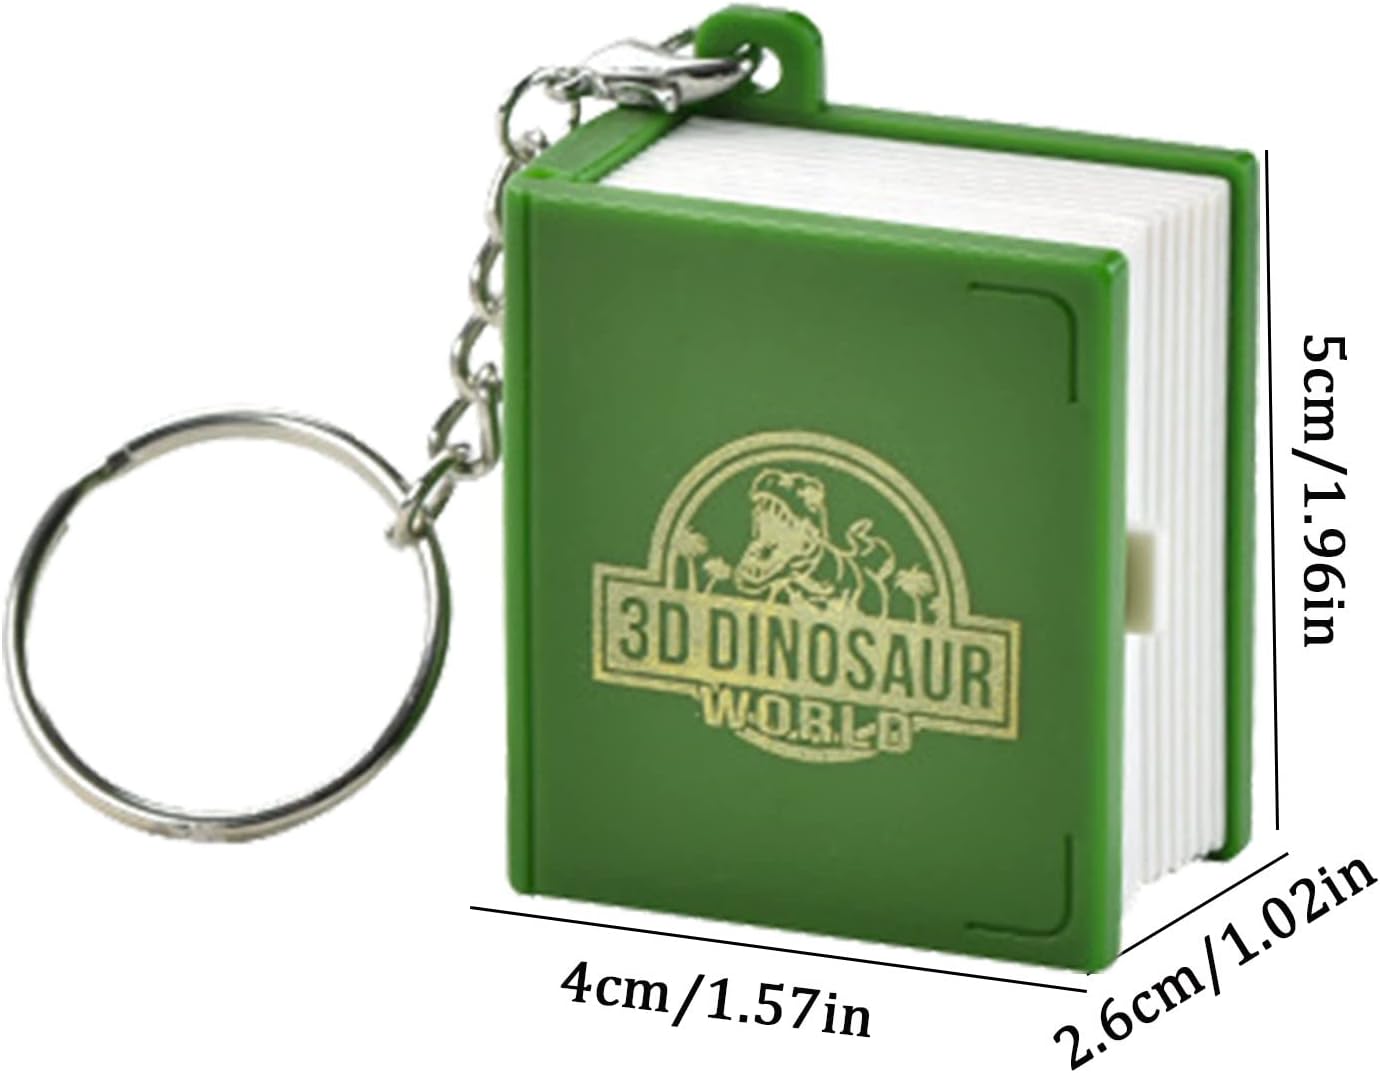 3D Dinosaur World Pop-up Keychain!!